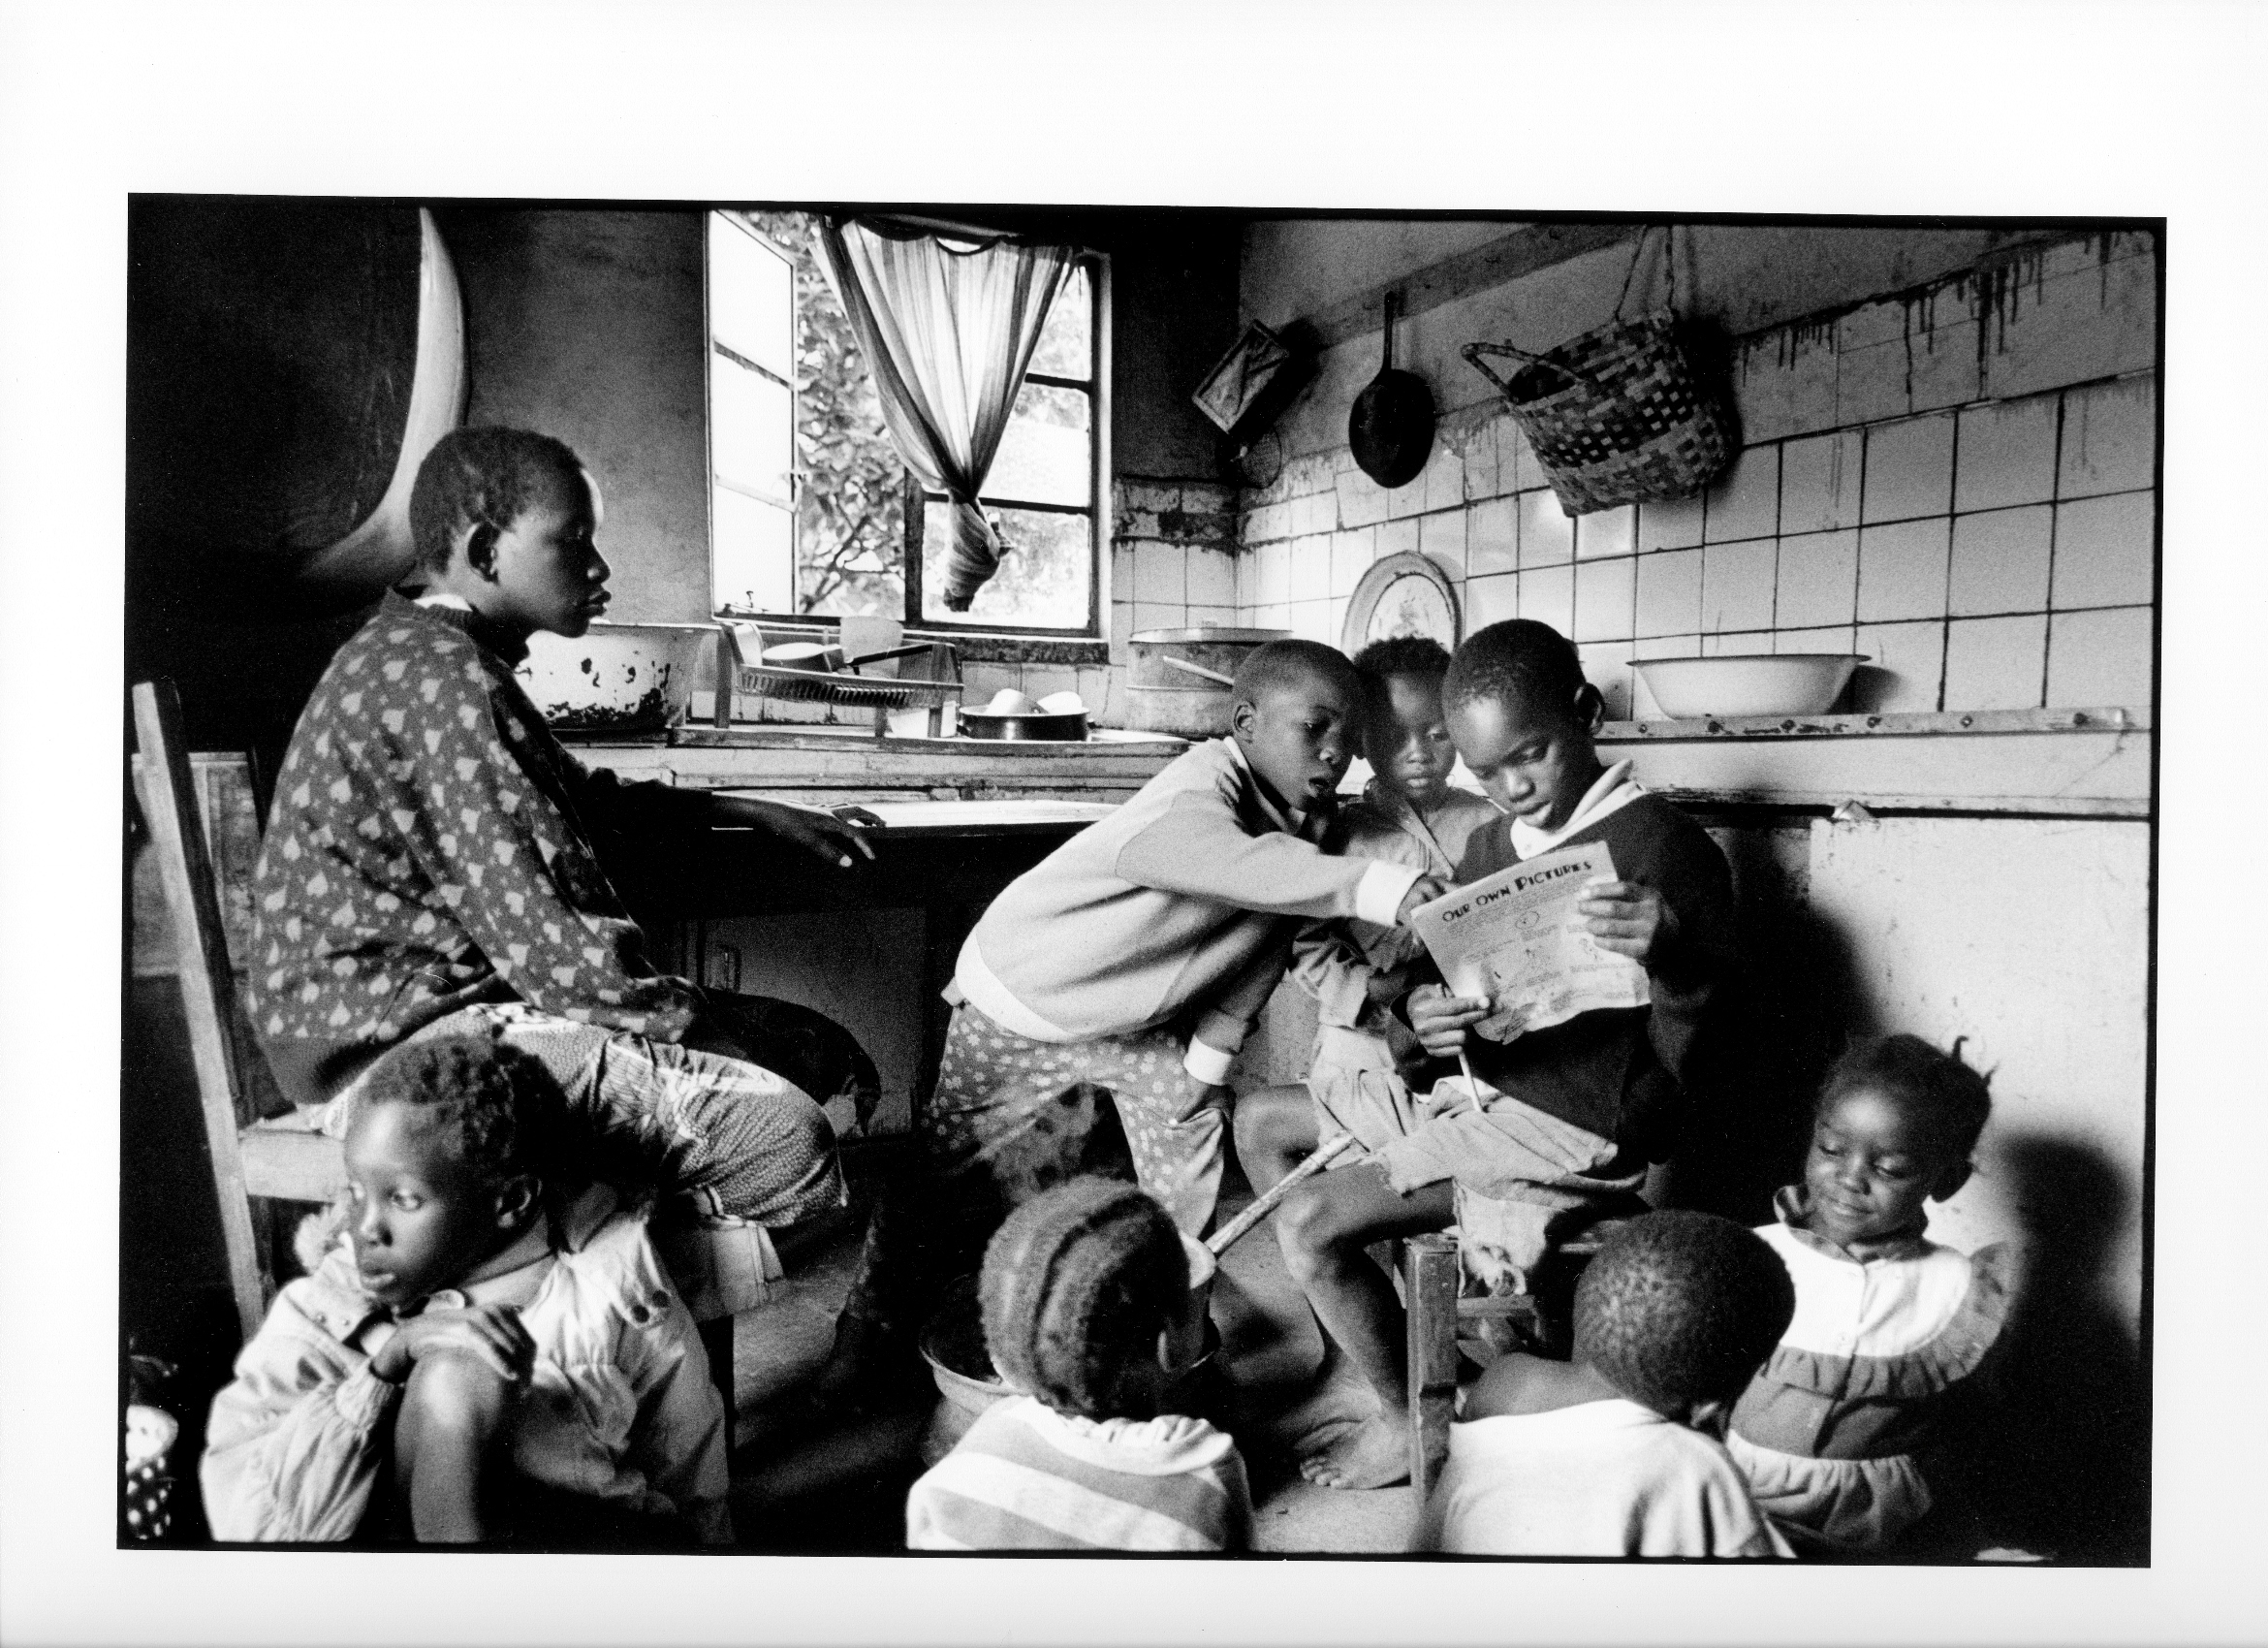 Rune Eraker, "Zambia", 1999, dzięki uprzejmości MOCAK